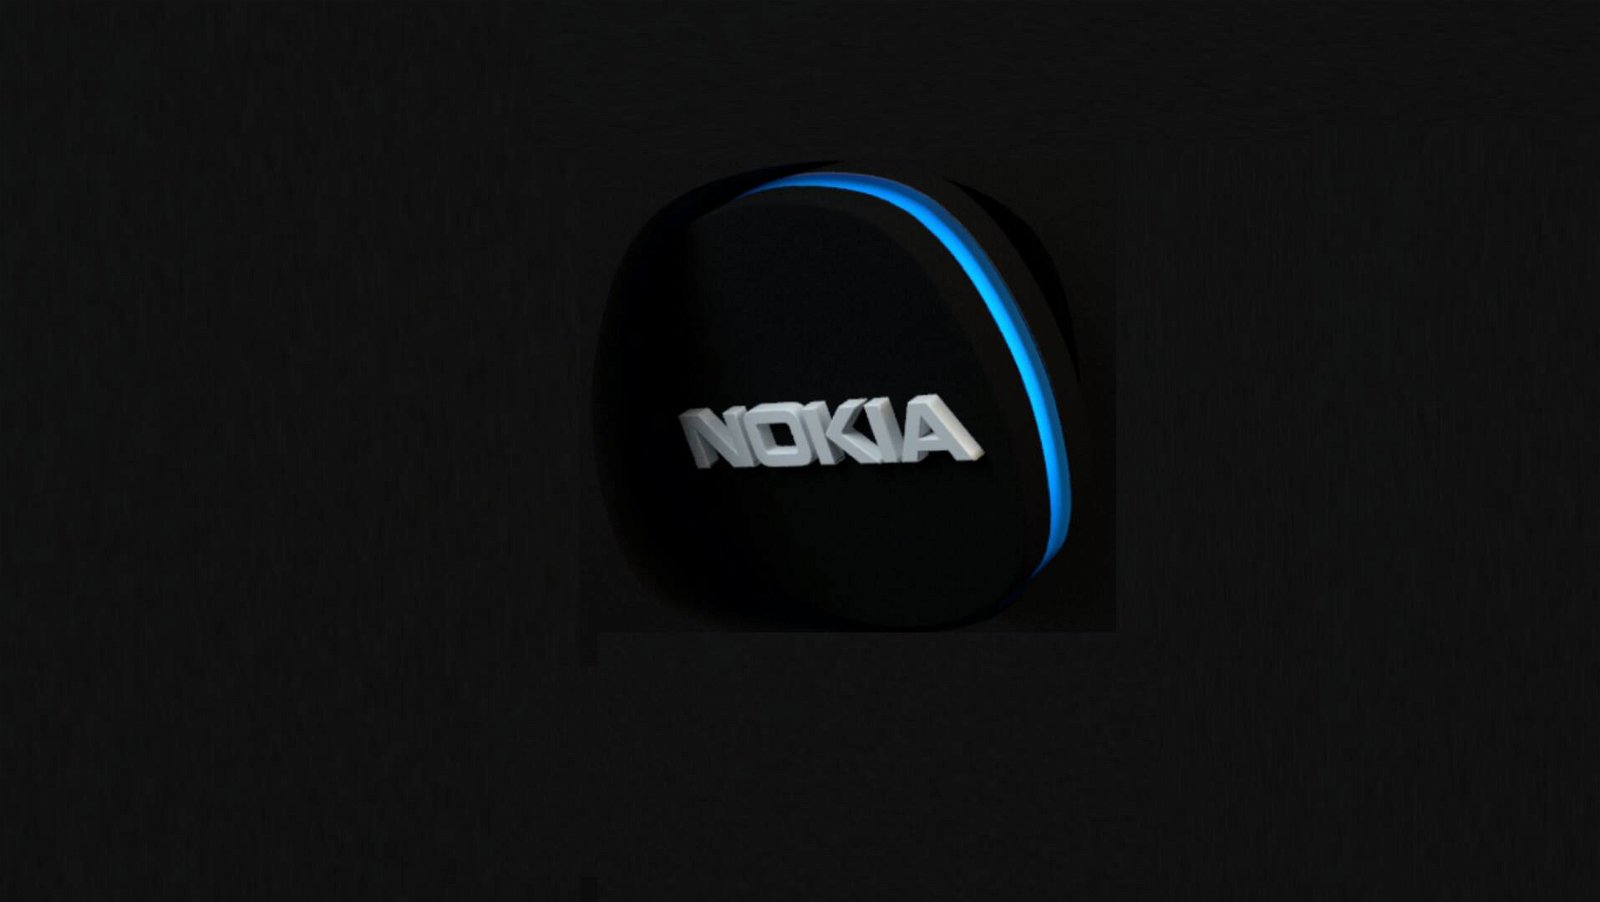 Immagine di Se volete il top di sicurezza, qualità e aggiornamenti l'unico brand è Nokia